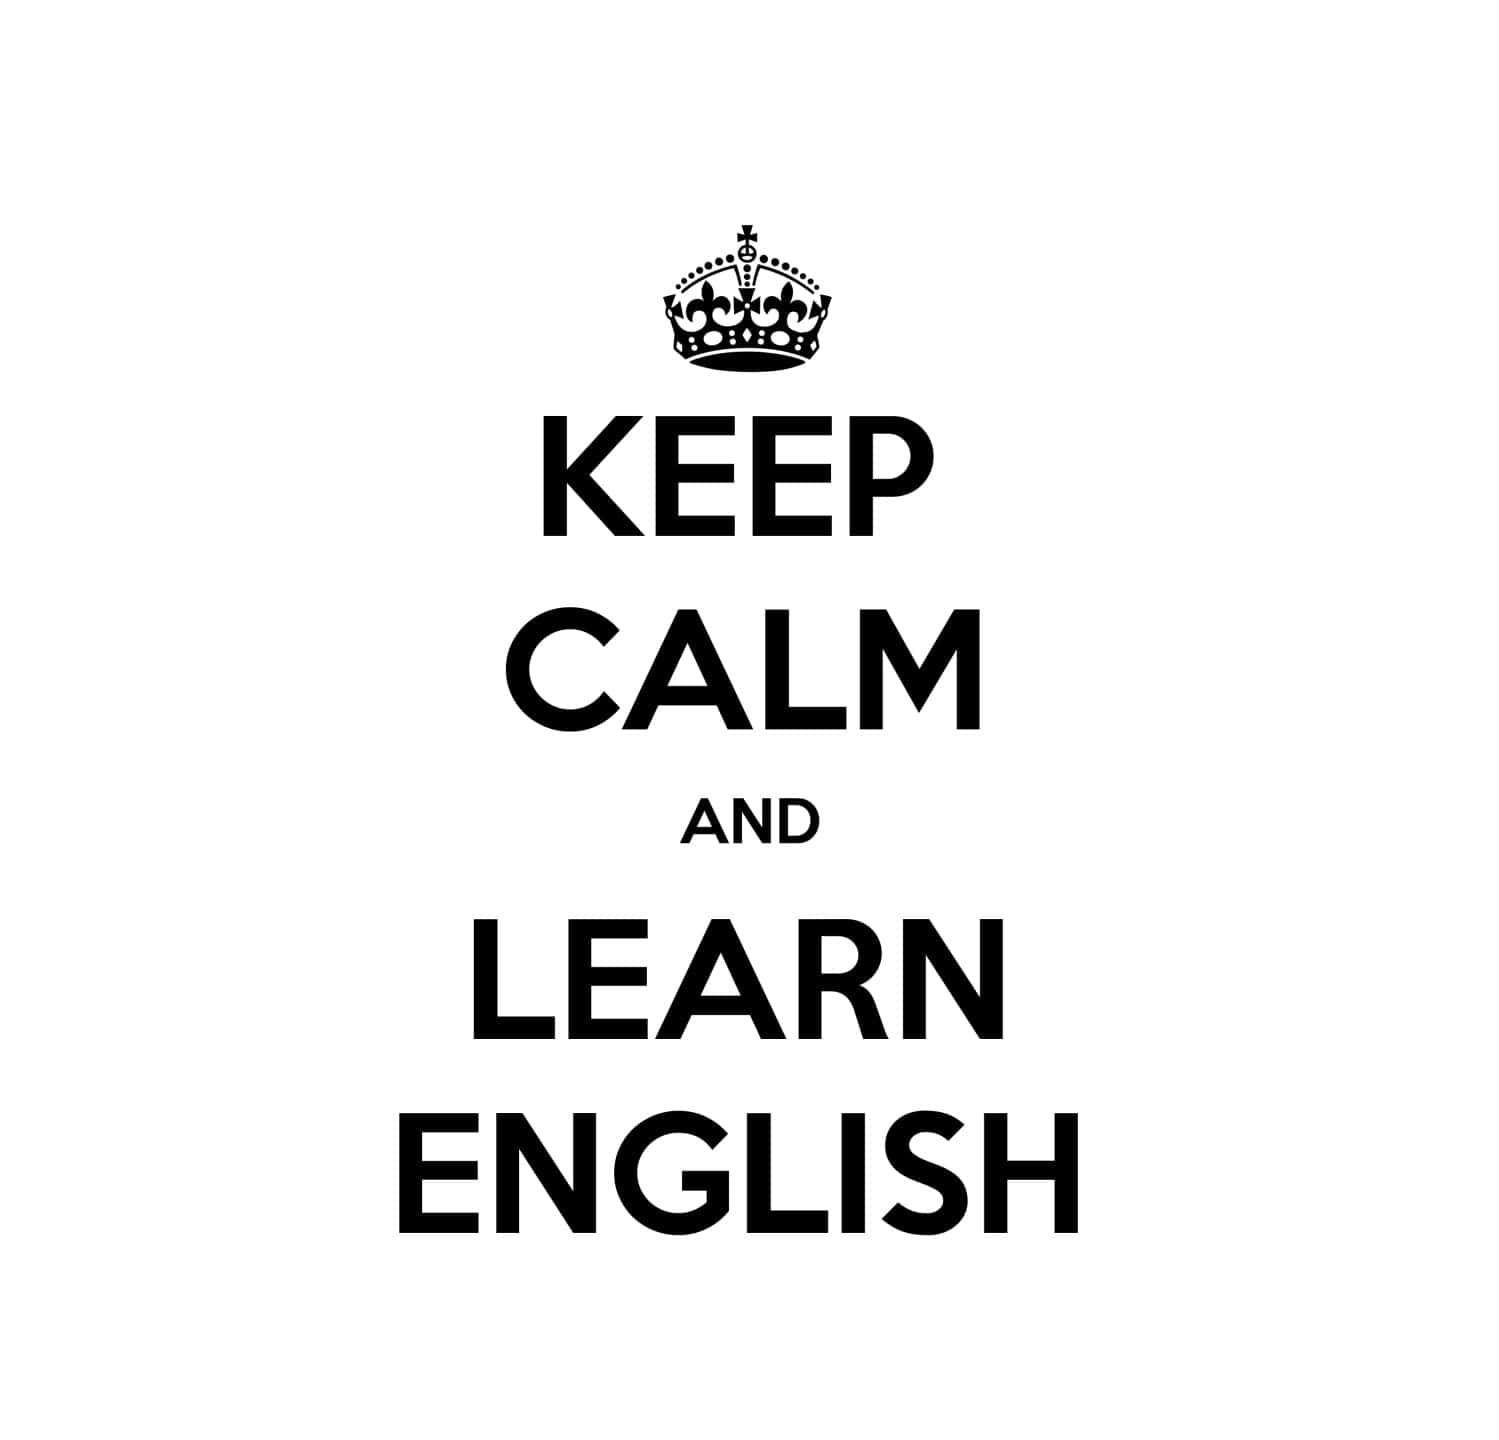 Learn English Language